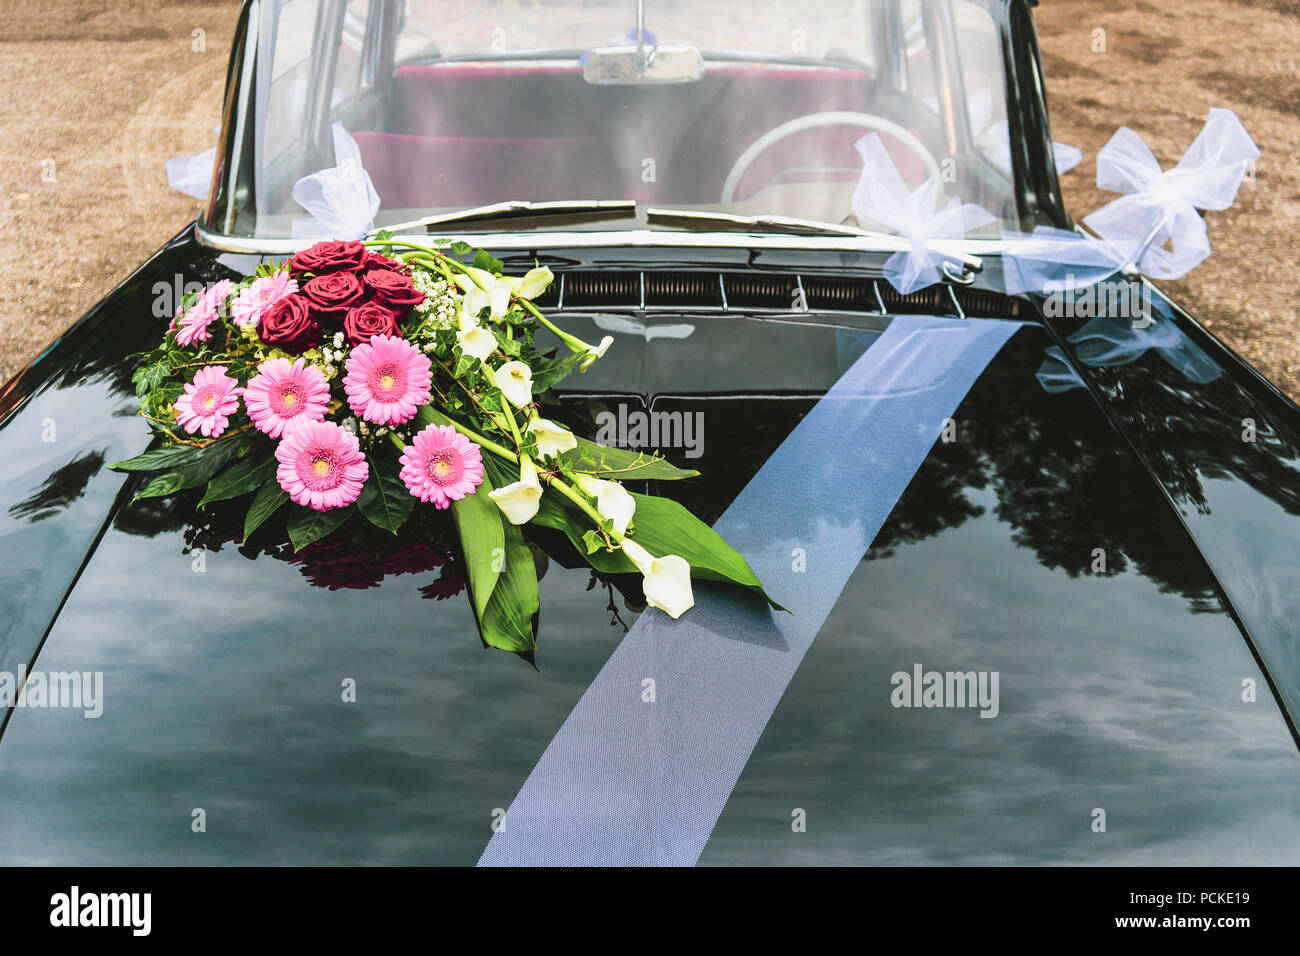 decoracion coche novios - Buscar con Google  Decoraciones de coches de boda,  Adornos para boda, Decoración del coche